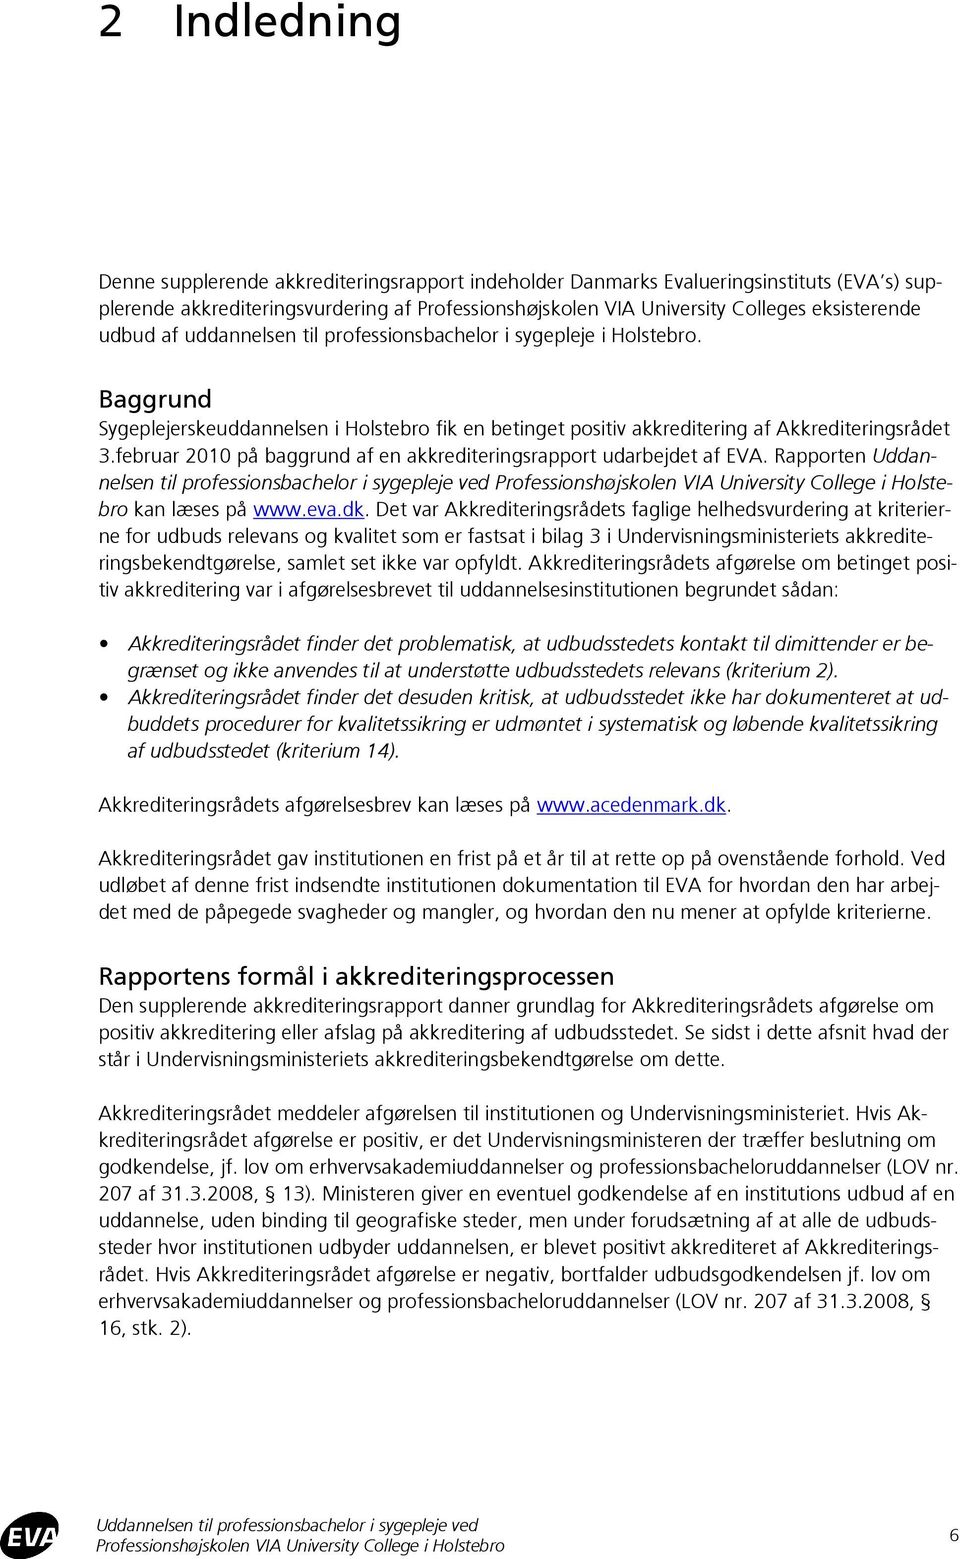 februar 2010 på baggrund af en akkrediteringsrapport udarbejdet af EVA. Rapporten Uddannelsen til professionsbachelor i sygepleje ved kan læses på www.eva.dk.